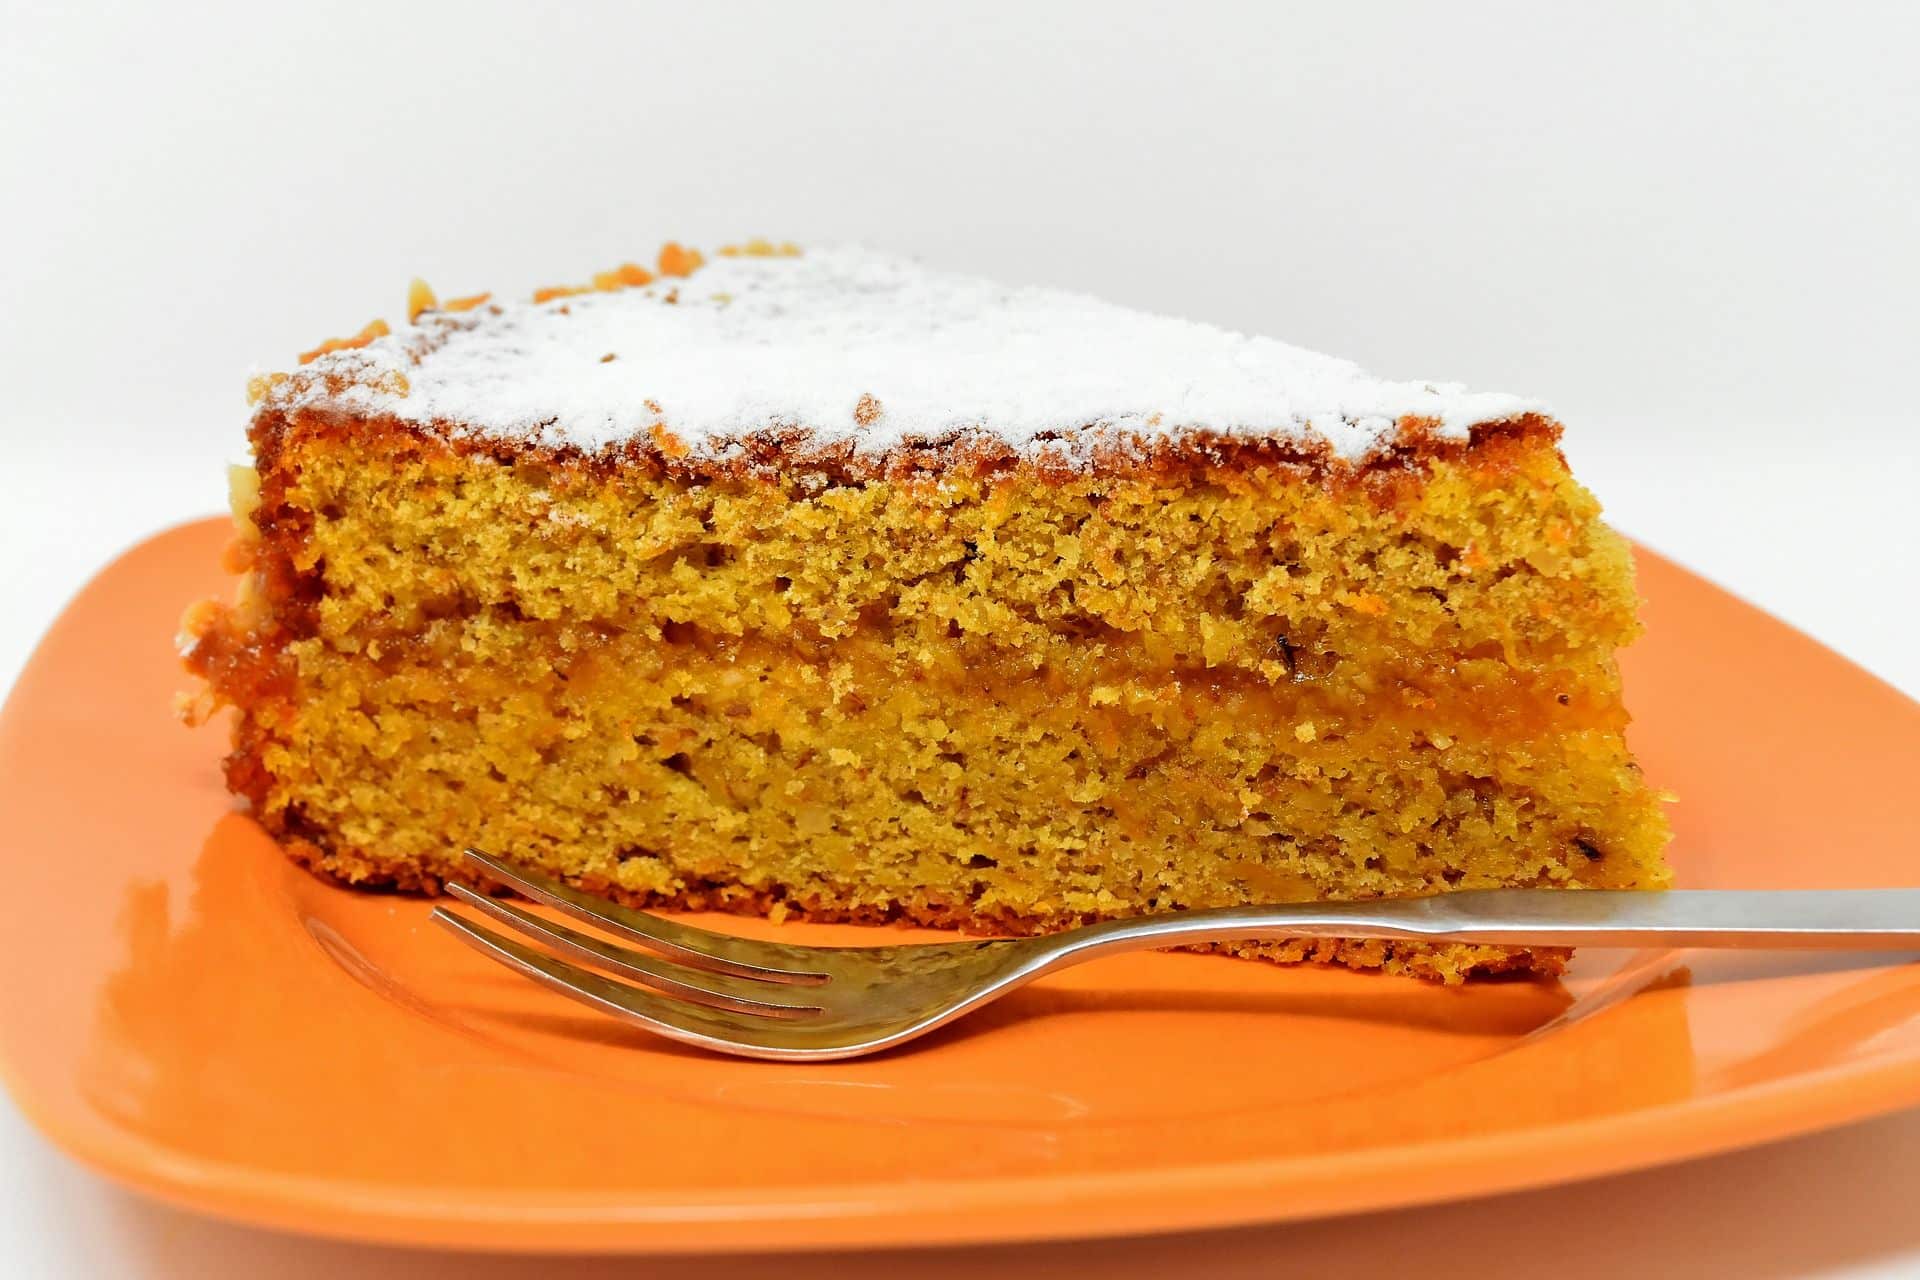 מורחים את הזיגוג על העוגה בחלק העליון. רצוי לשמור את העוגה במקרר. צילום pixabay